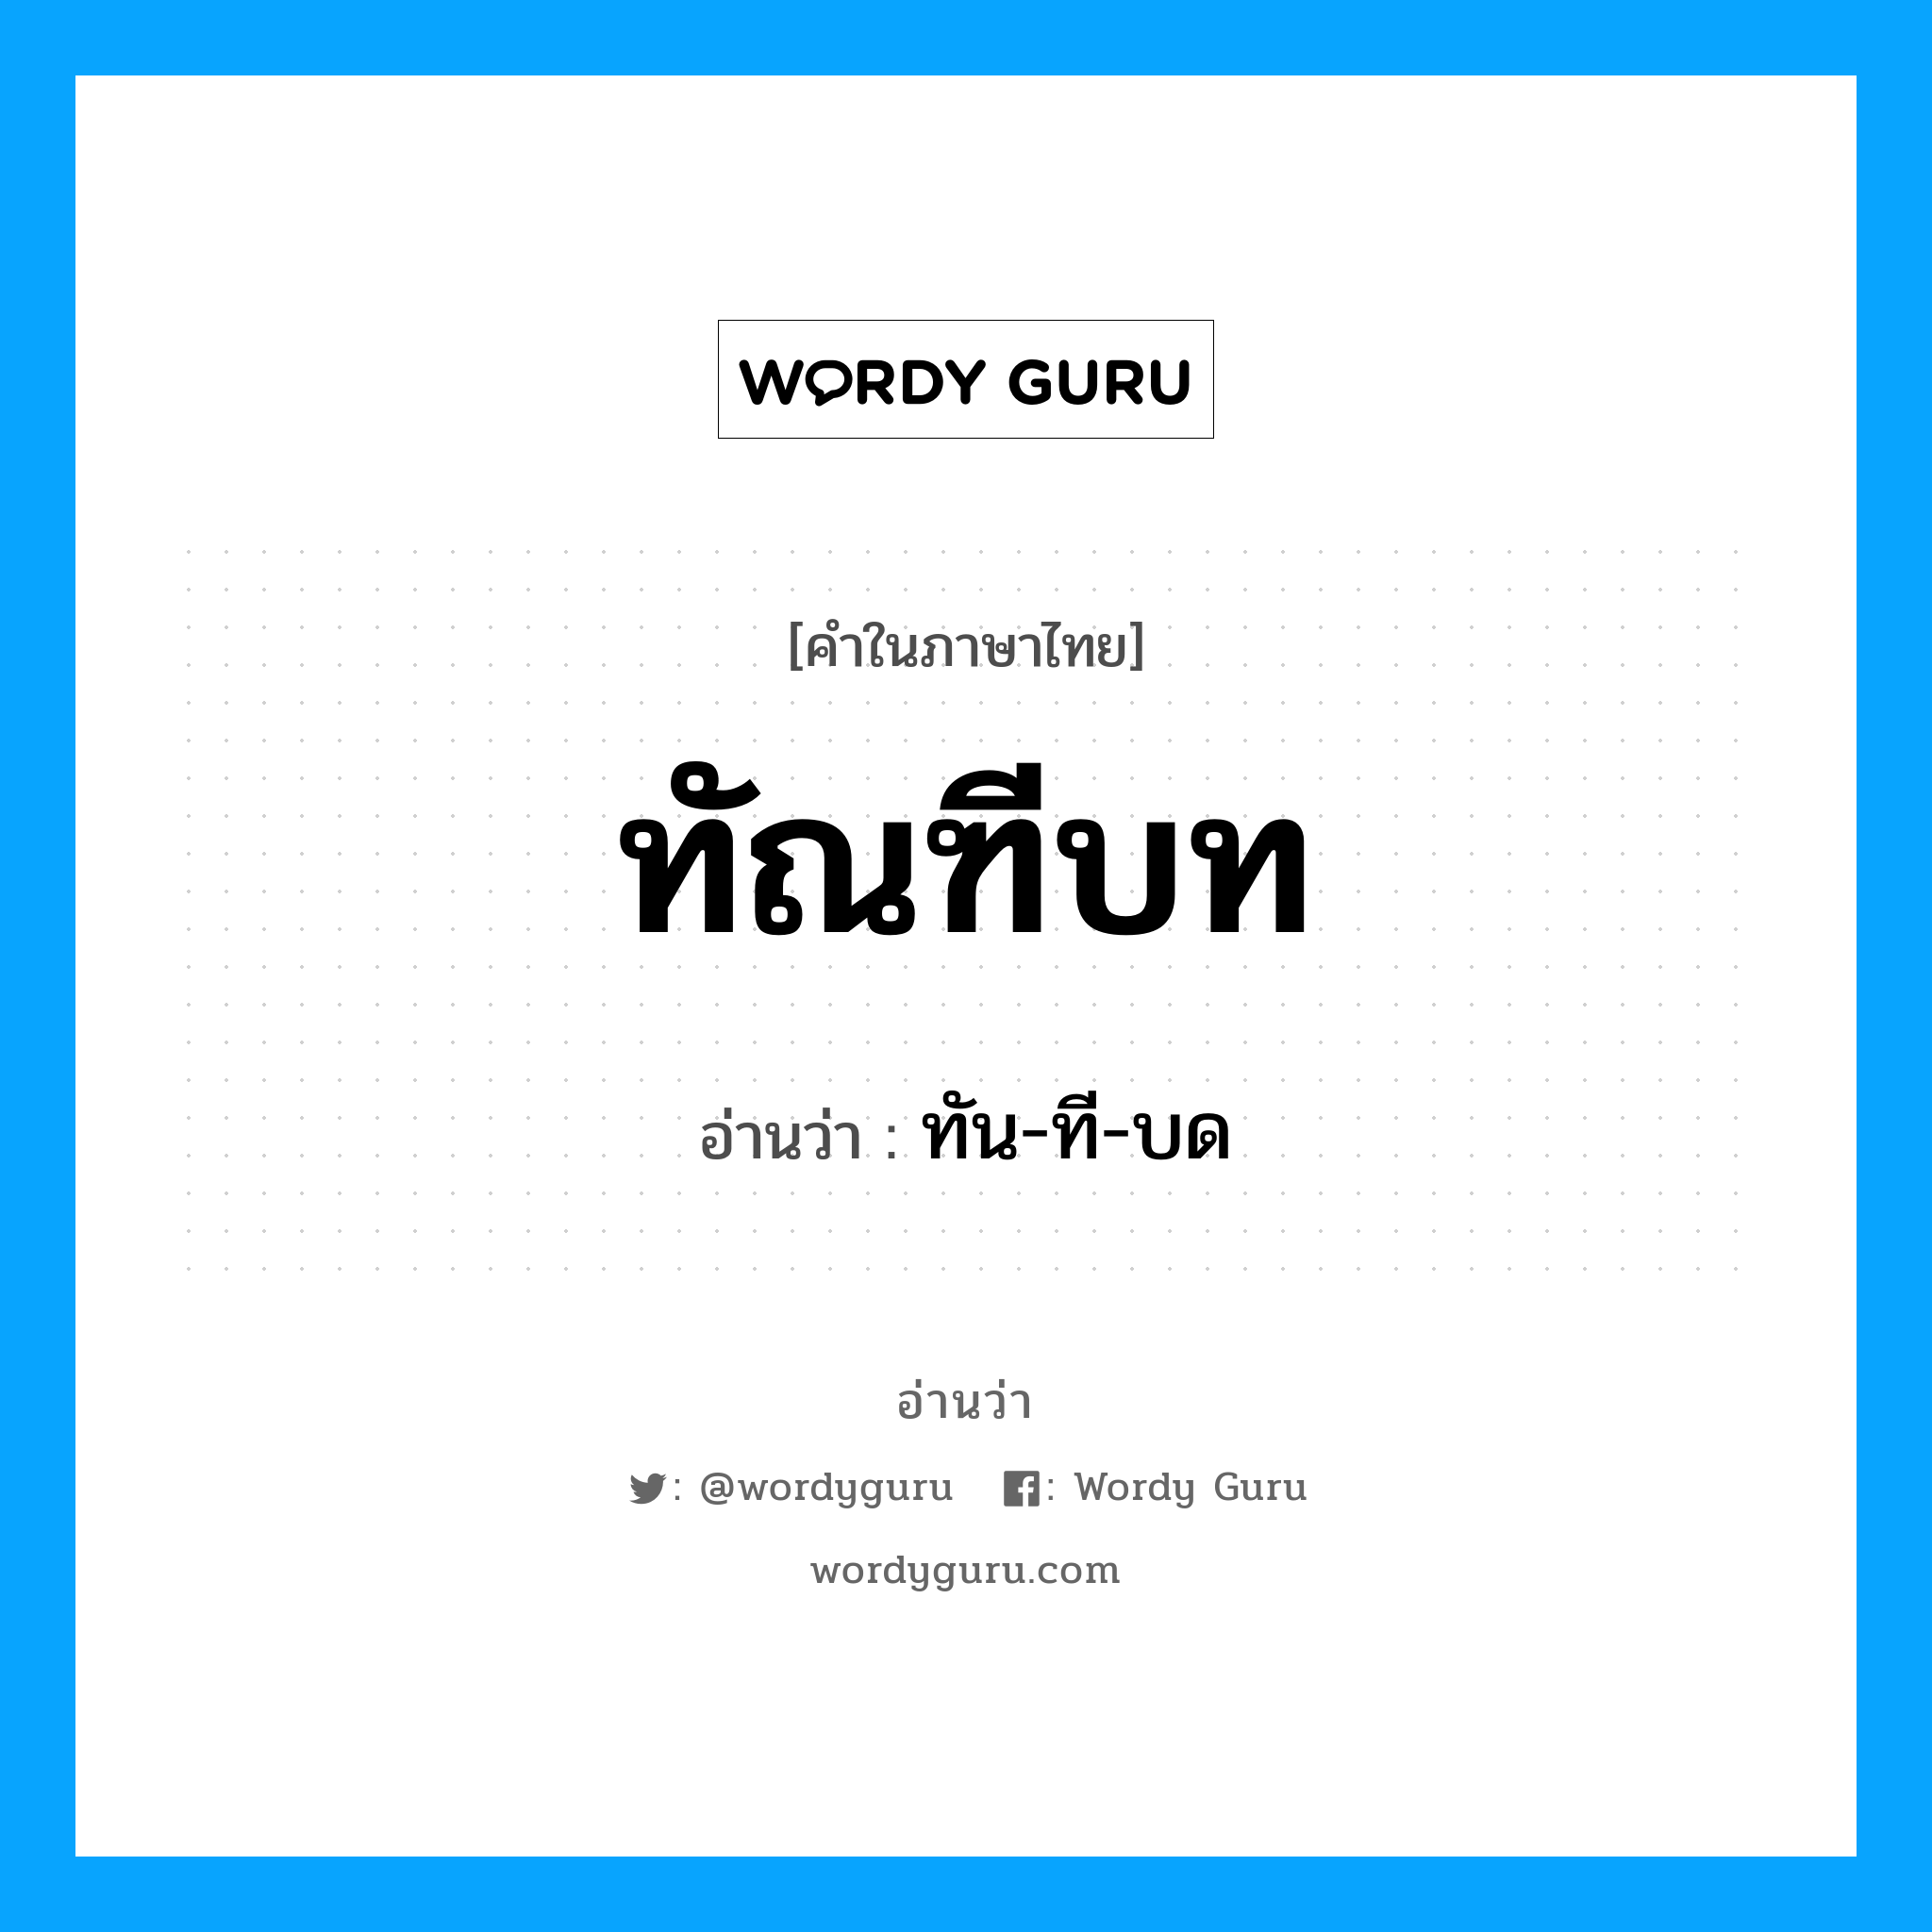 ทัน-ที-บด เป็นคำอ่านของคำไหน?, คำในภาษาไทย ทัน-ที-บด อ่านว่า ทัณฑีบท